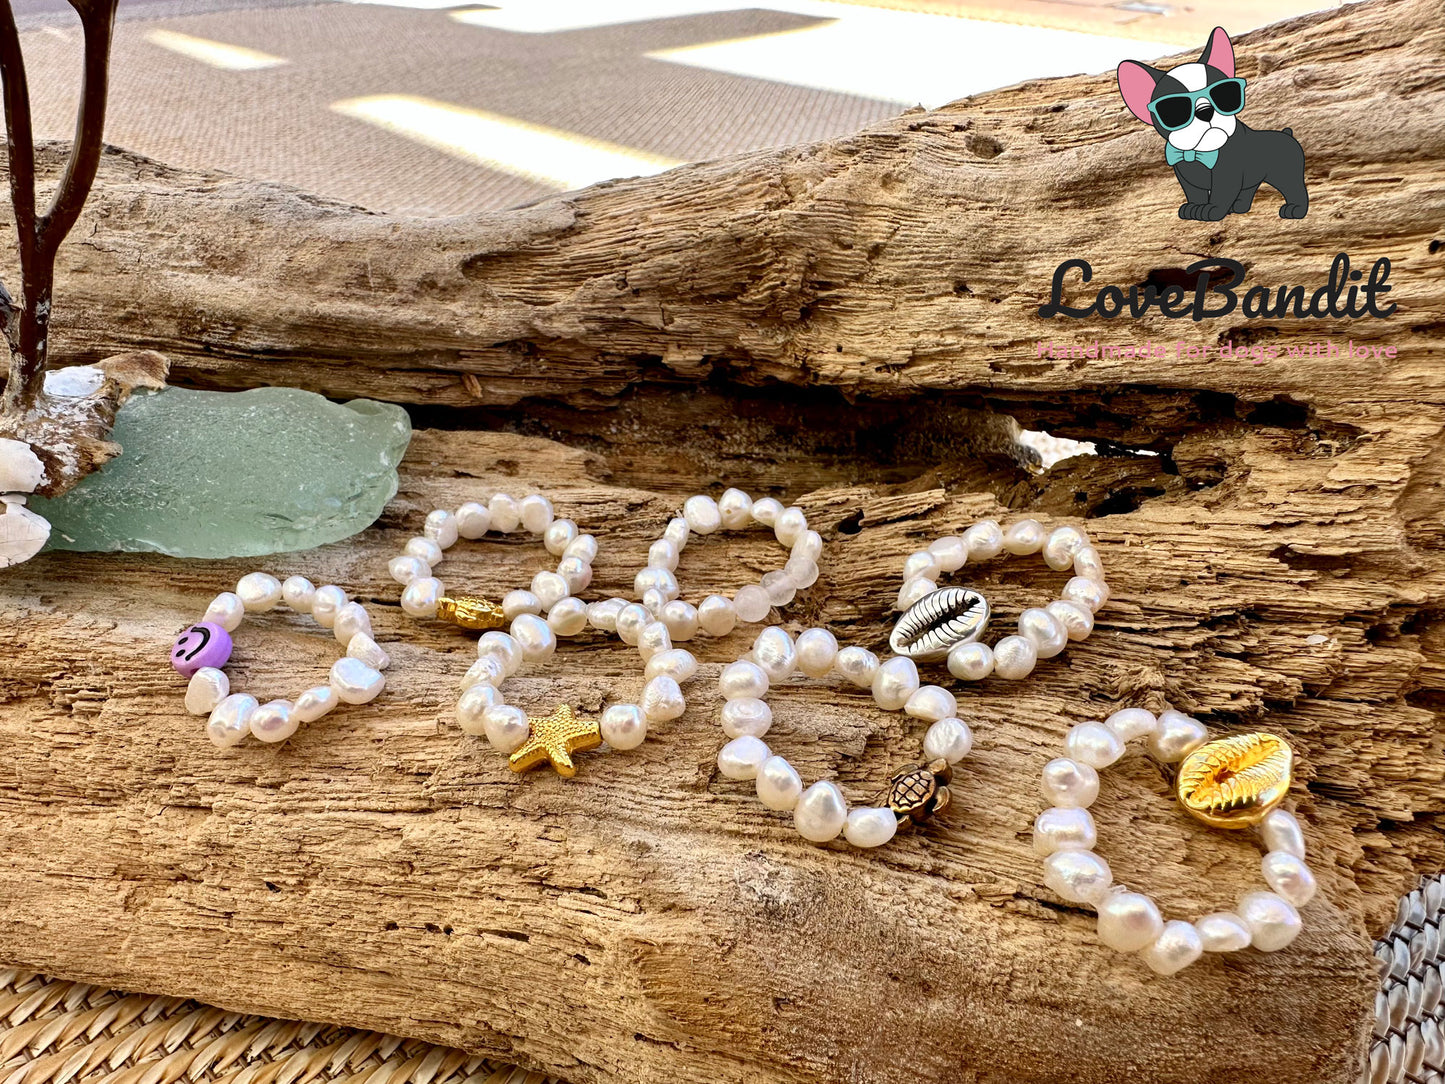 Süsswasserperlen Ring mit Metallelement Schildkröte, Blume, Baum Lovebandit